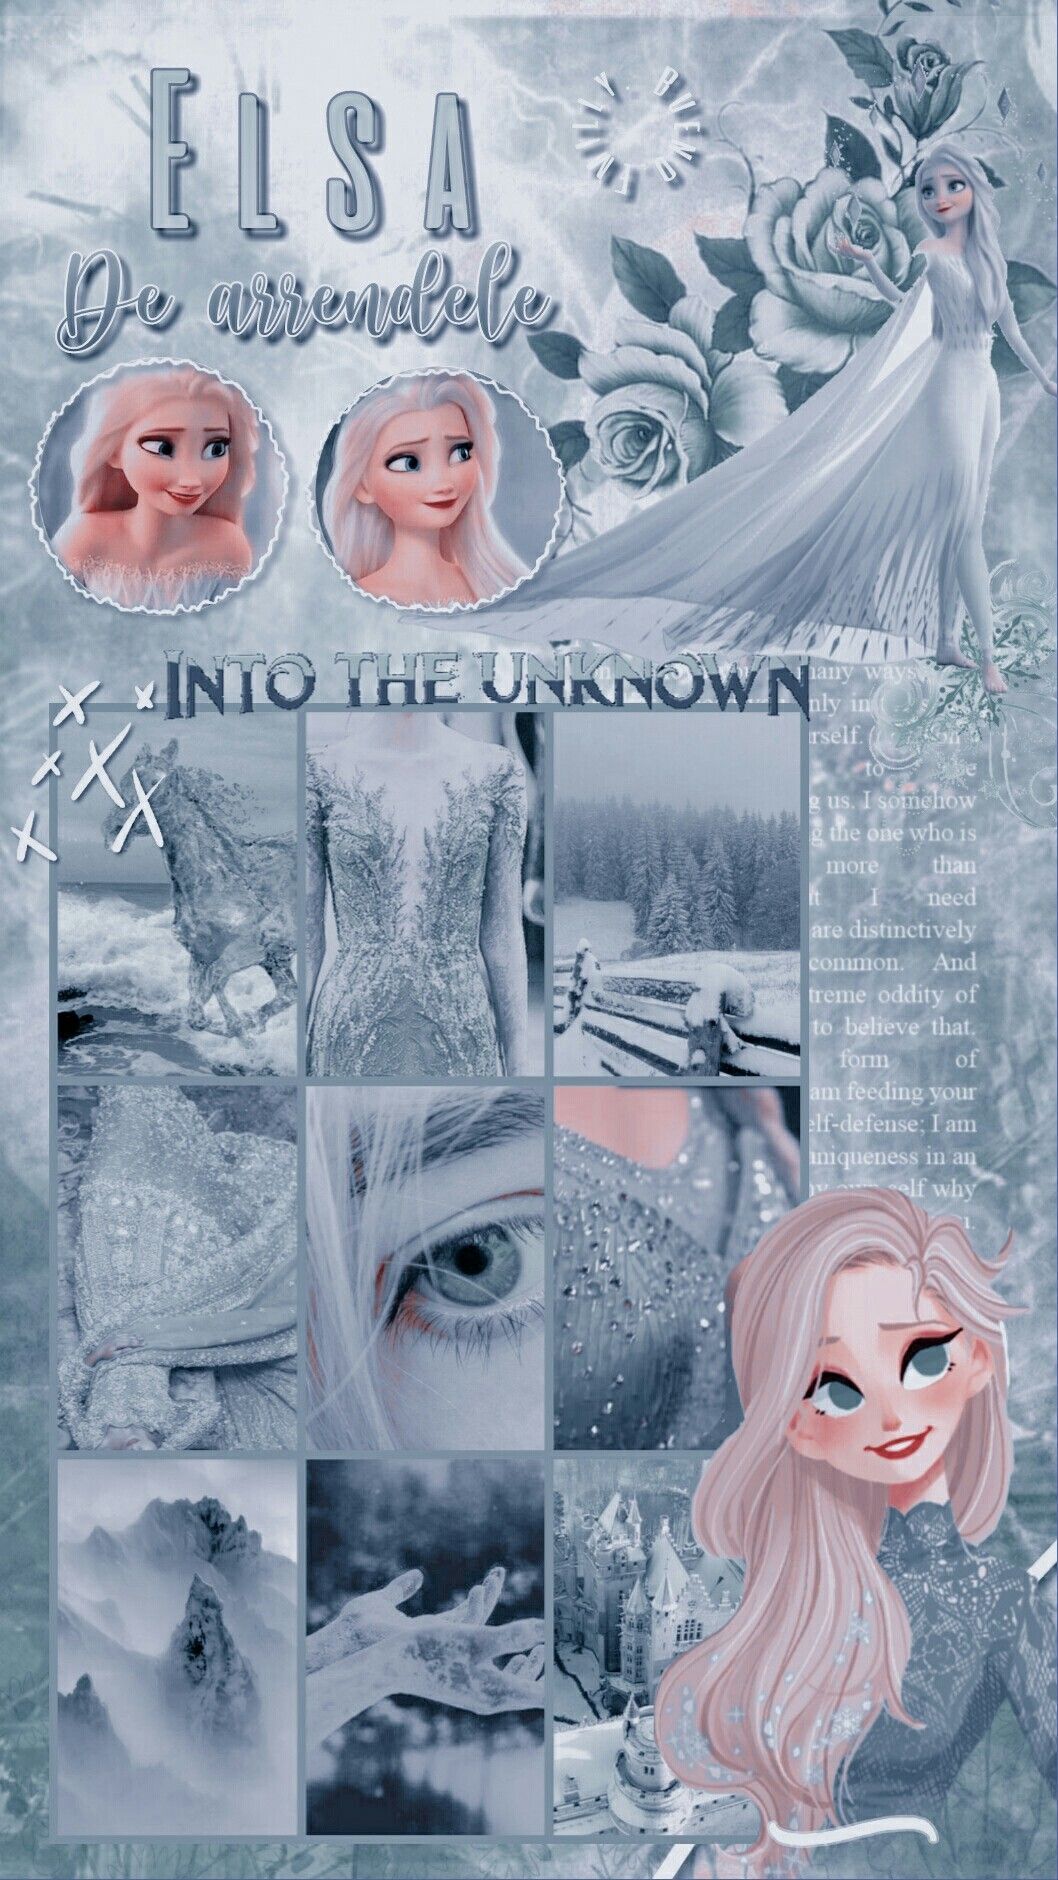 Aesthetic 3.0 Elsa. Wallpaper bonitos, Desenhos de personagens da disney, Poster de parede